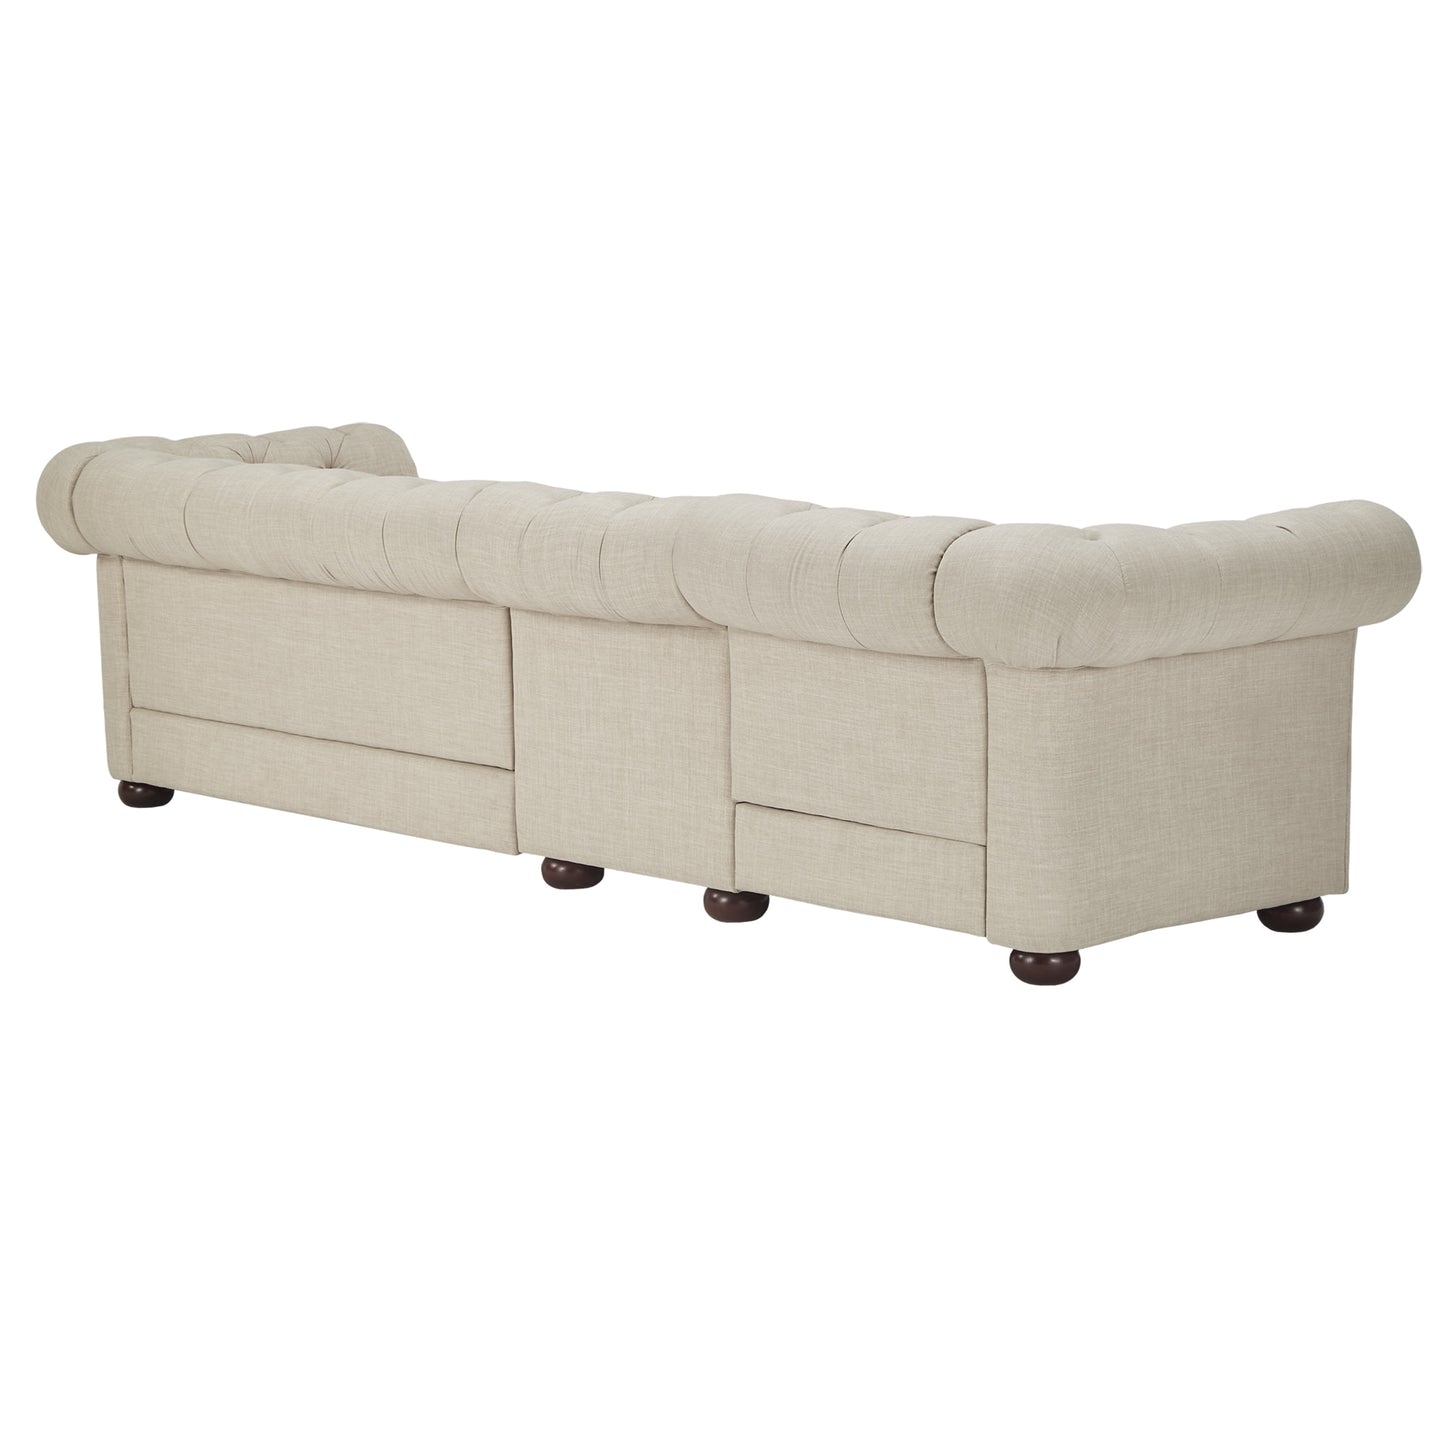 4-Seat Modular Chesterfield Sofa - Beige Linen